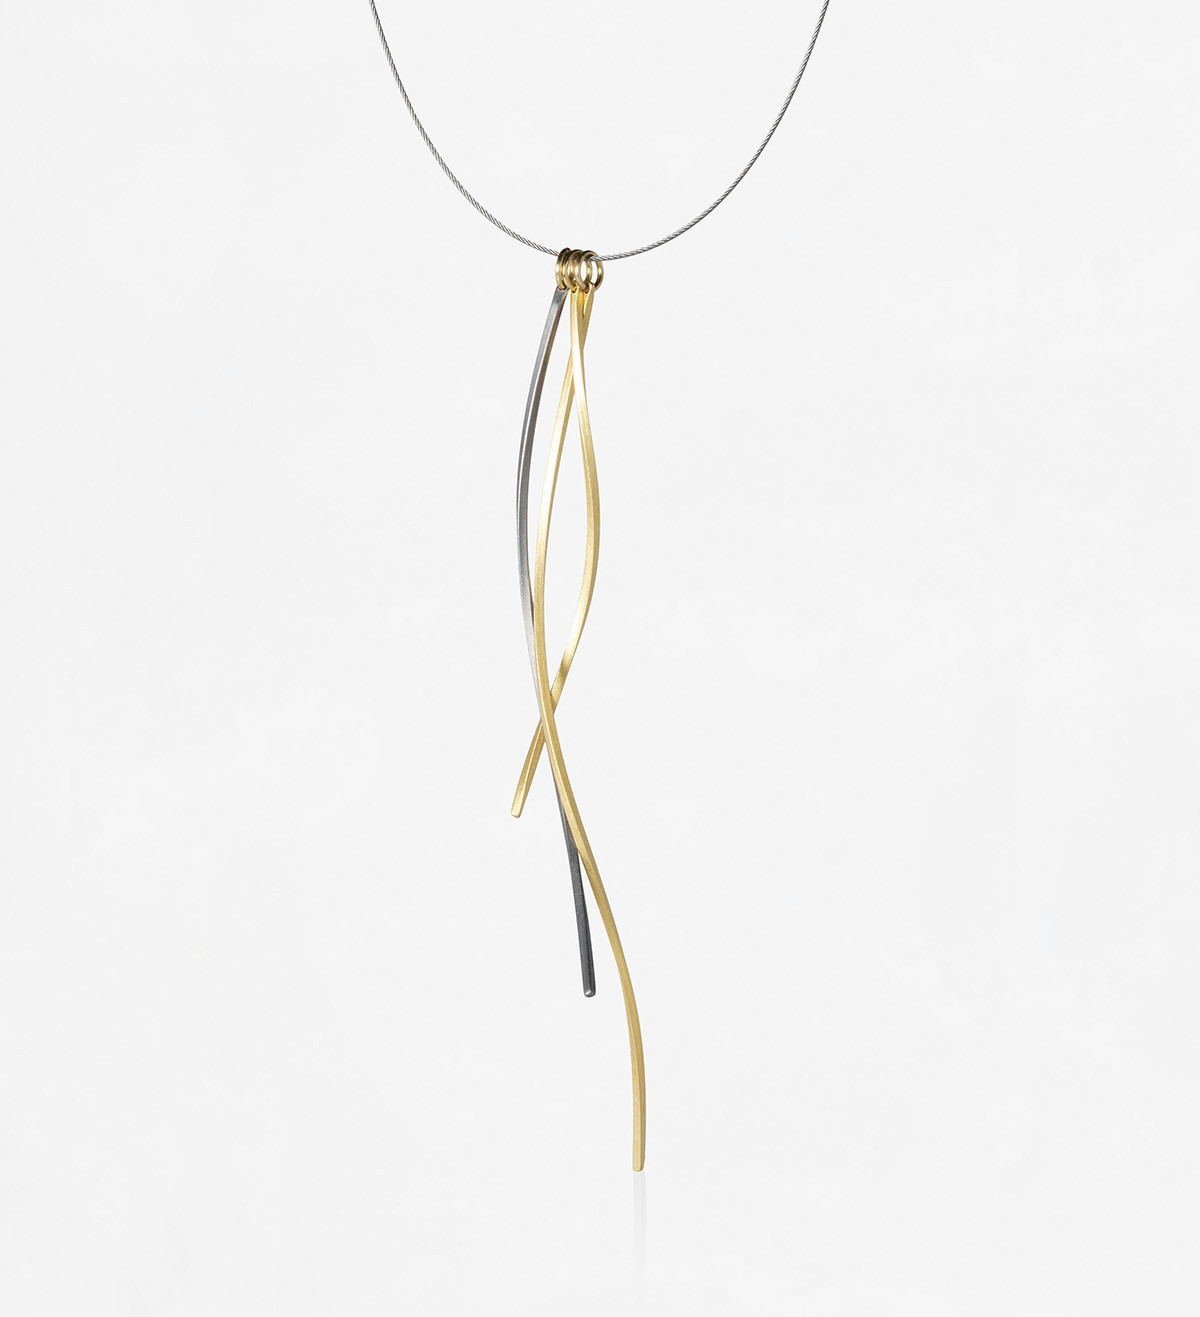 18k gold & titanium pendant Pinassa with steel cable 42cm